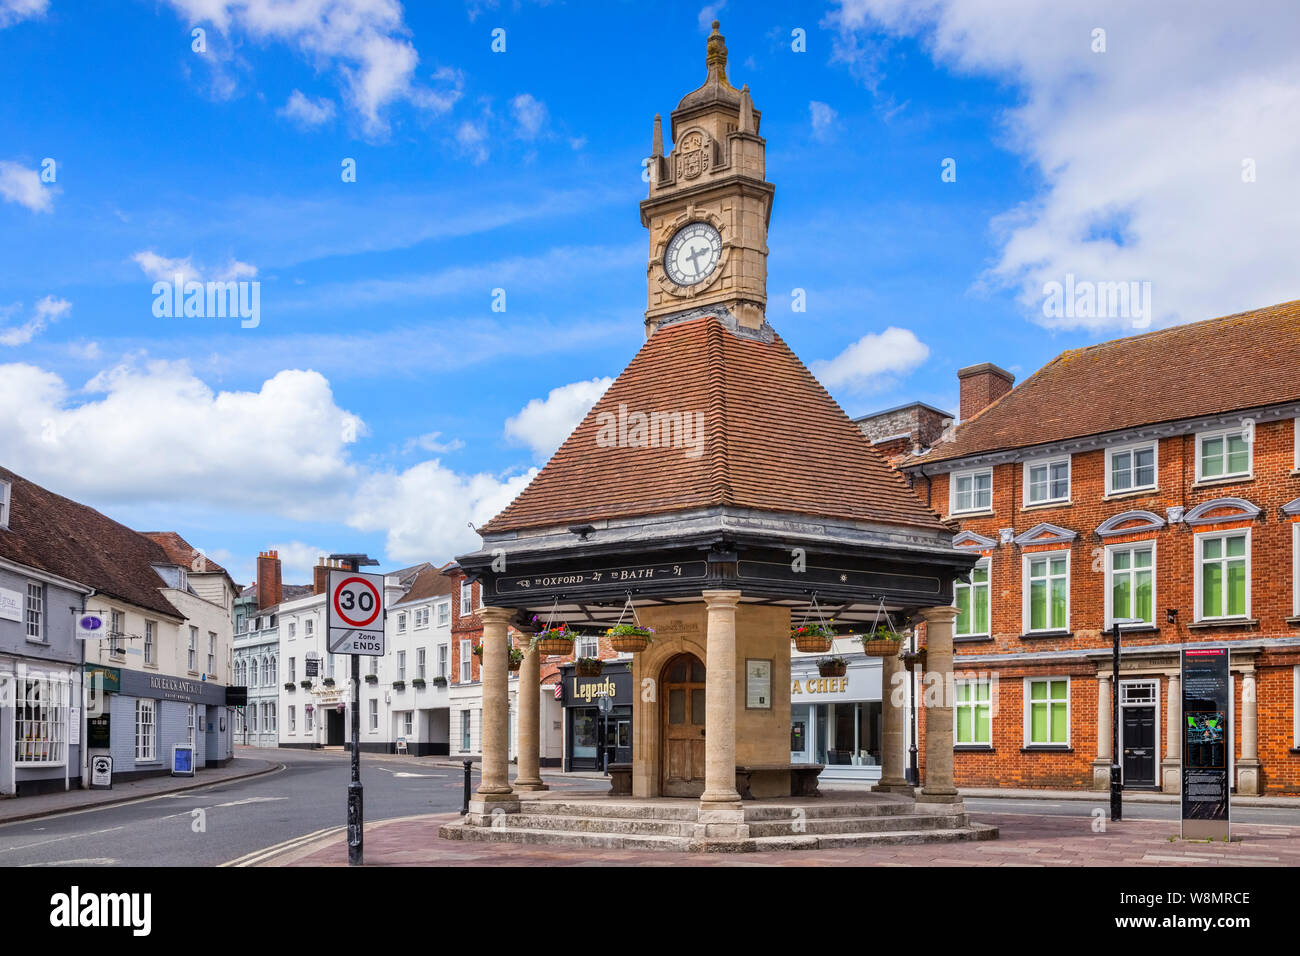 8 de junio de 2019: en Newbury, Berkshire, Reino Unido - La Casa del Reloj, una torre del reloj del siglo xx en Newbury, Berkshire. Foto de stock